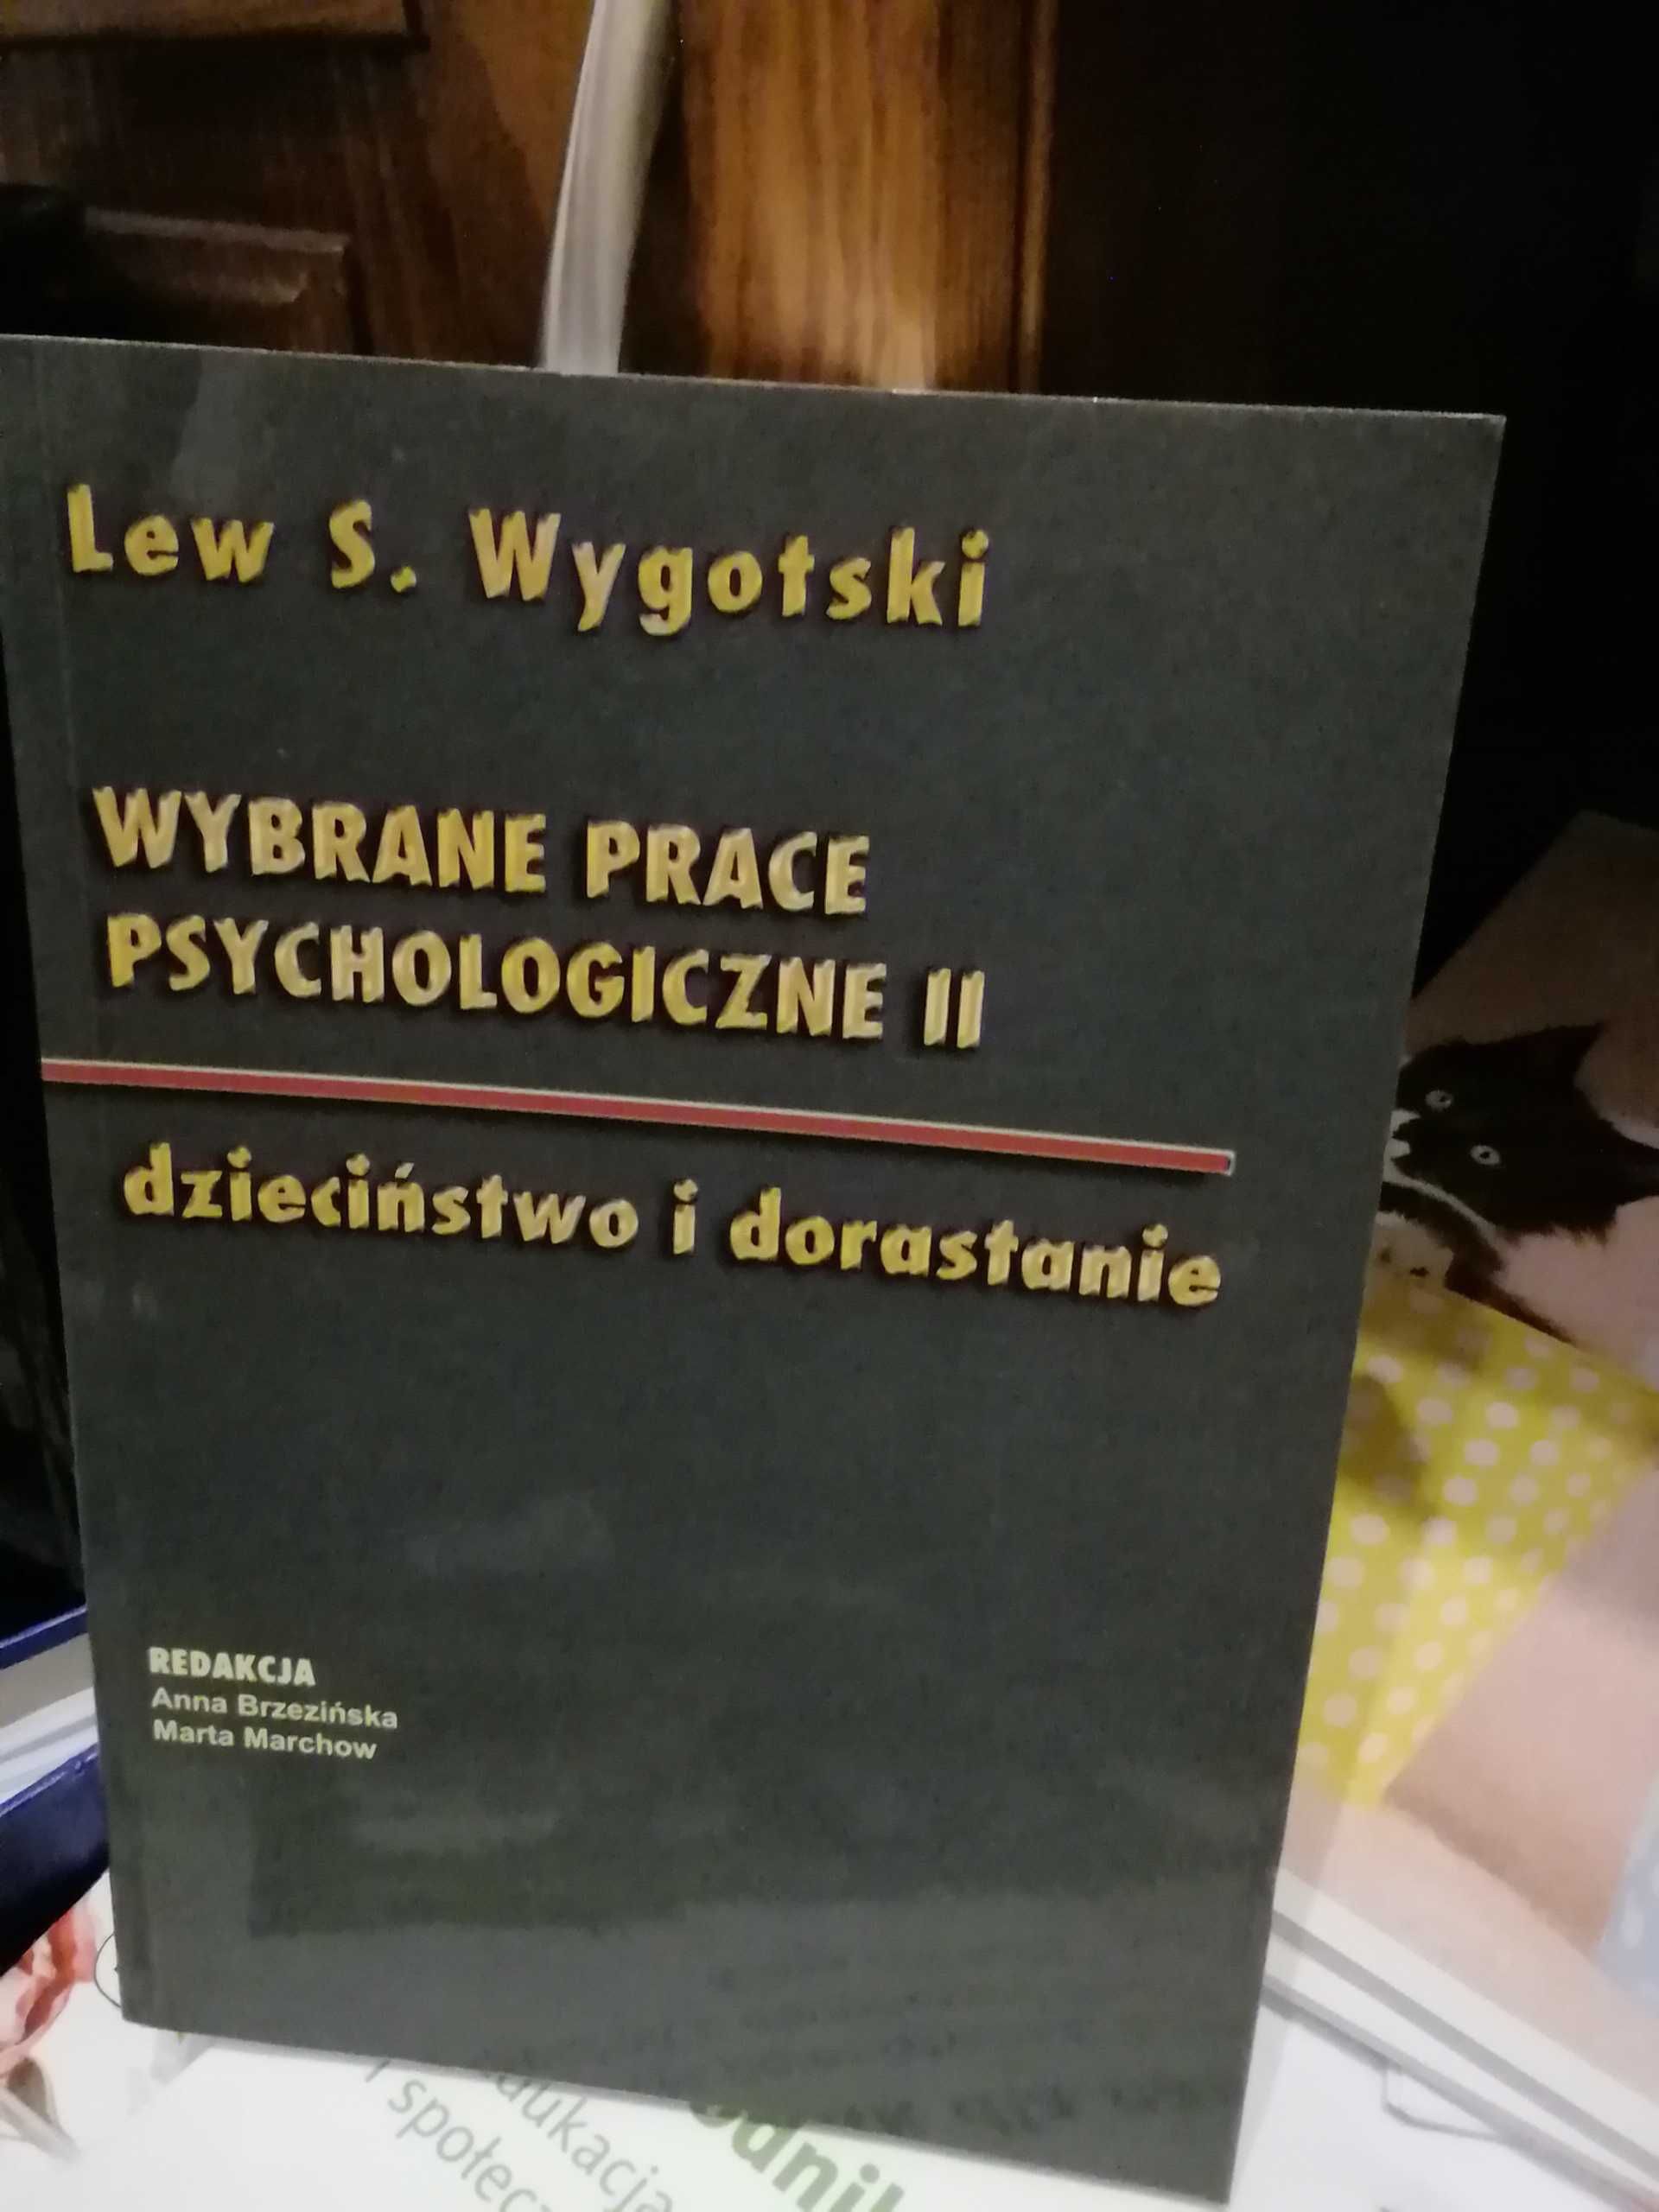 Lew S. Wygotski Wybrane prace psychologiczne II